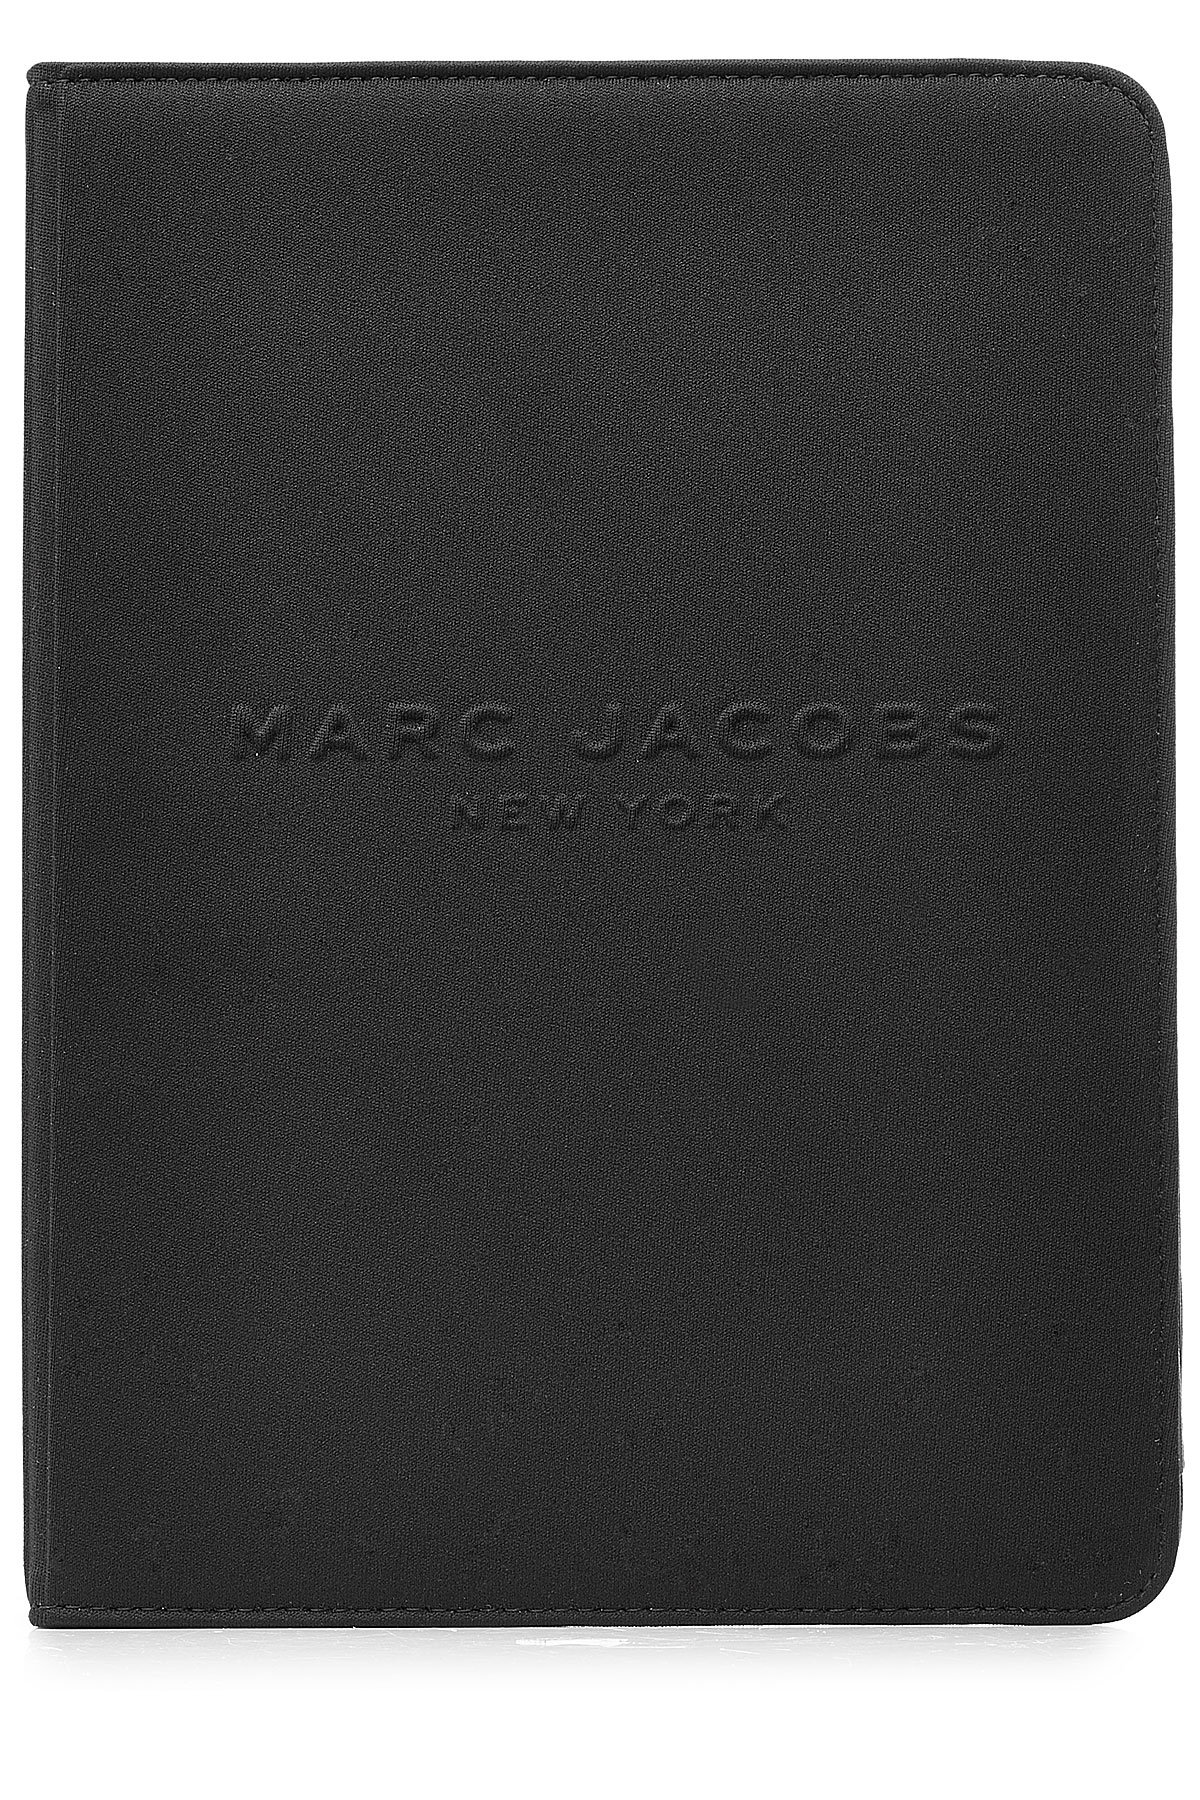 Marc Jacobs - Logo Debossed Tablet Notebook